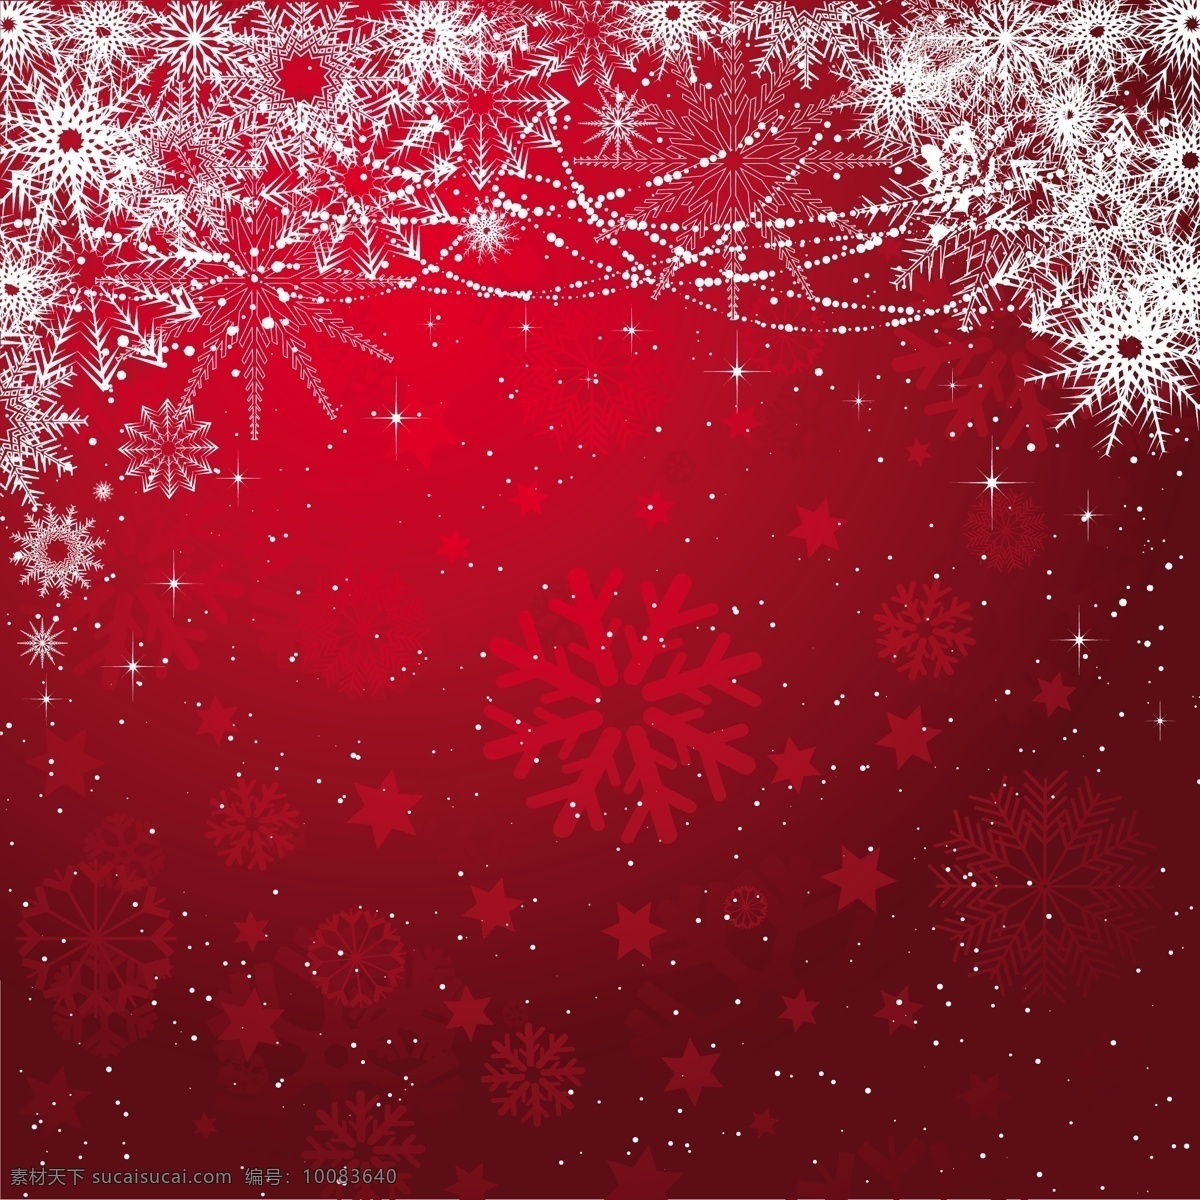 红色 白色 雪花 背景 圣诞 圣诞快乐 圣诞节 冬季 快乐 饰品 庆祝活动 假日 装饰 假期